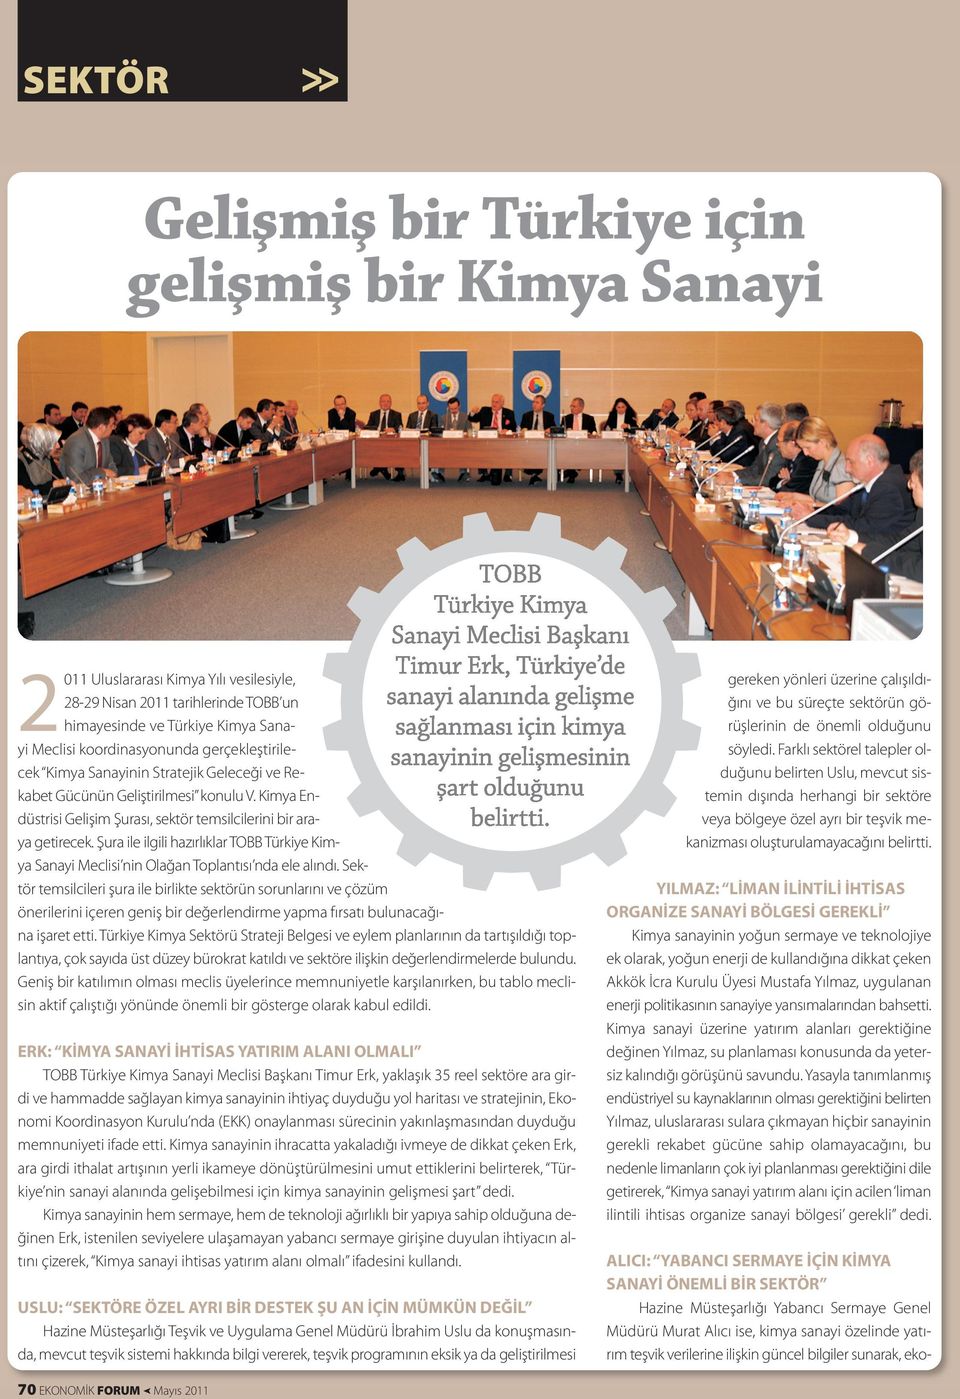 Şura ile ilgili hazırlıklar TOBB Türkiye Kimya Sanayi Meclisi nin Olağan Toplantısı nda ele alındı.